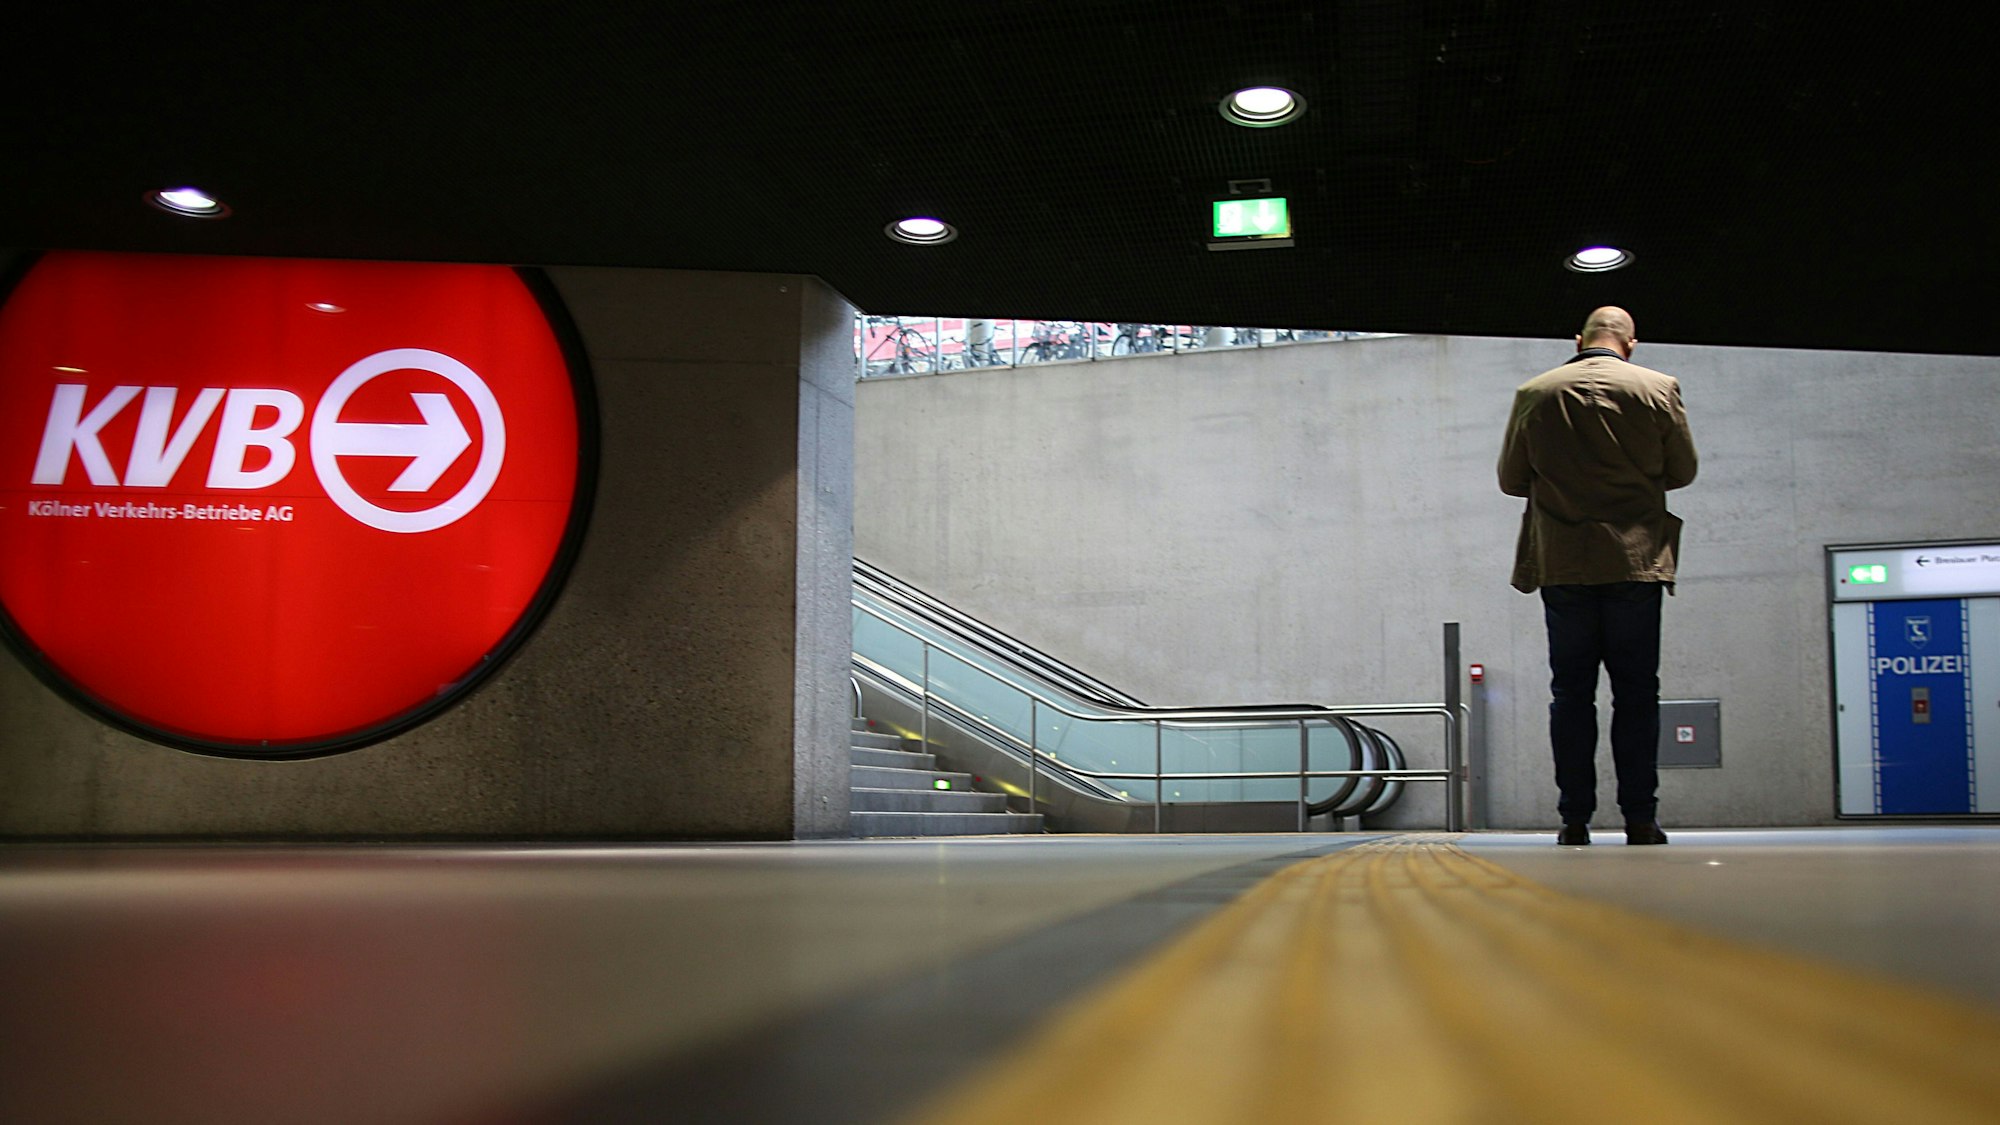 Ein Mann steht in einer leeren U-Bahn Station und blickt auf sein Smartphone, neben ihm hängt ein KVB-Logo.